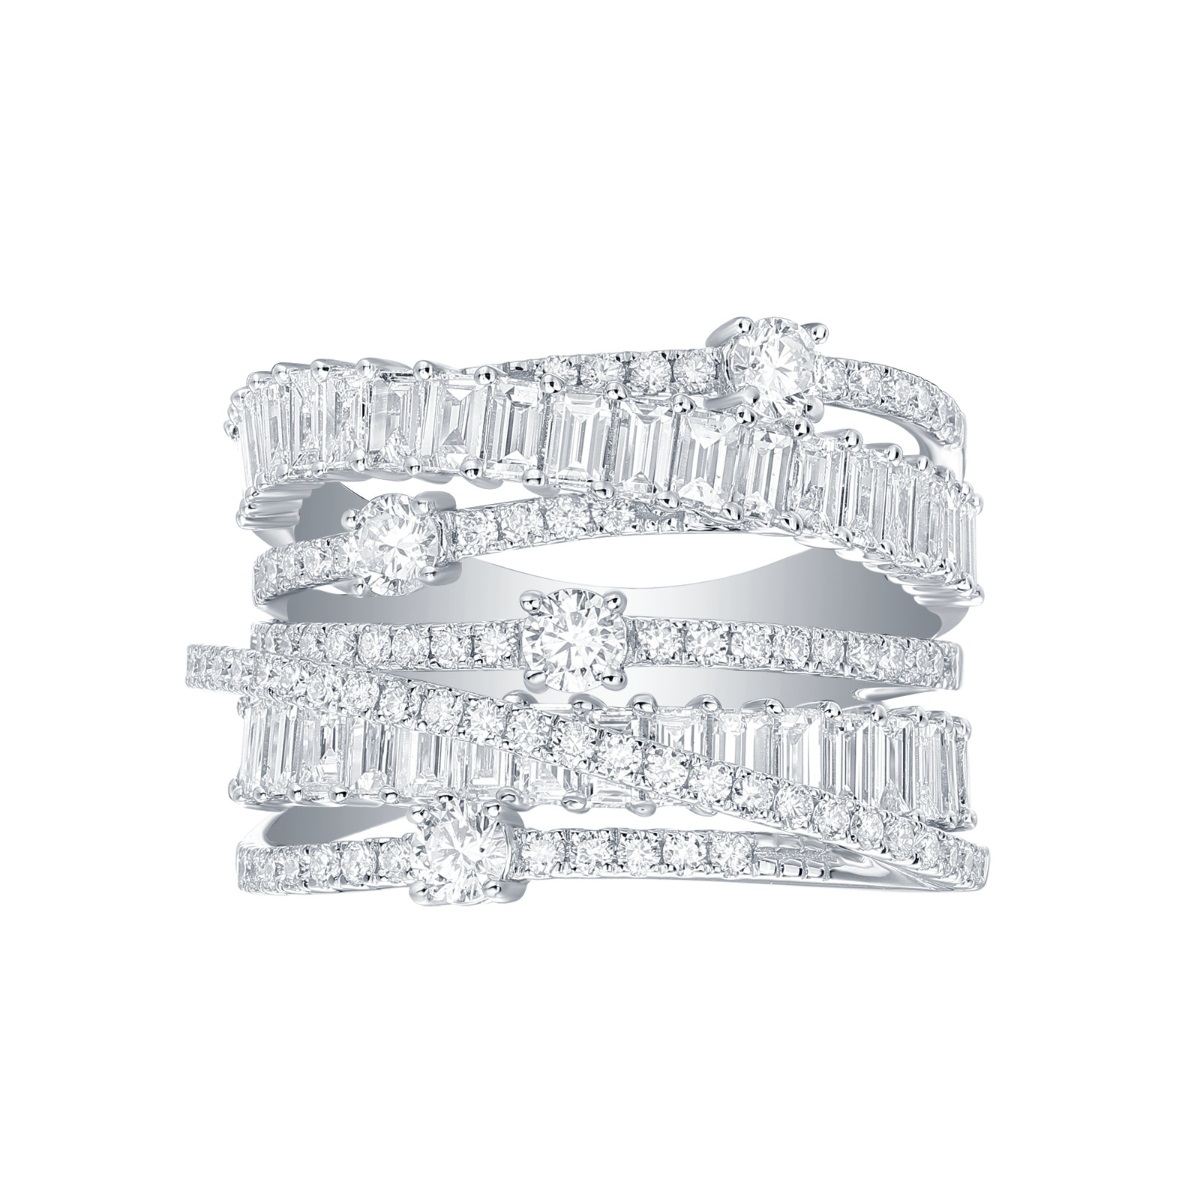 R36968WHT – 18K White Gold Diamond Ring, 2.71 TCW